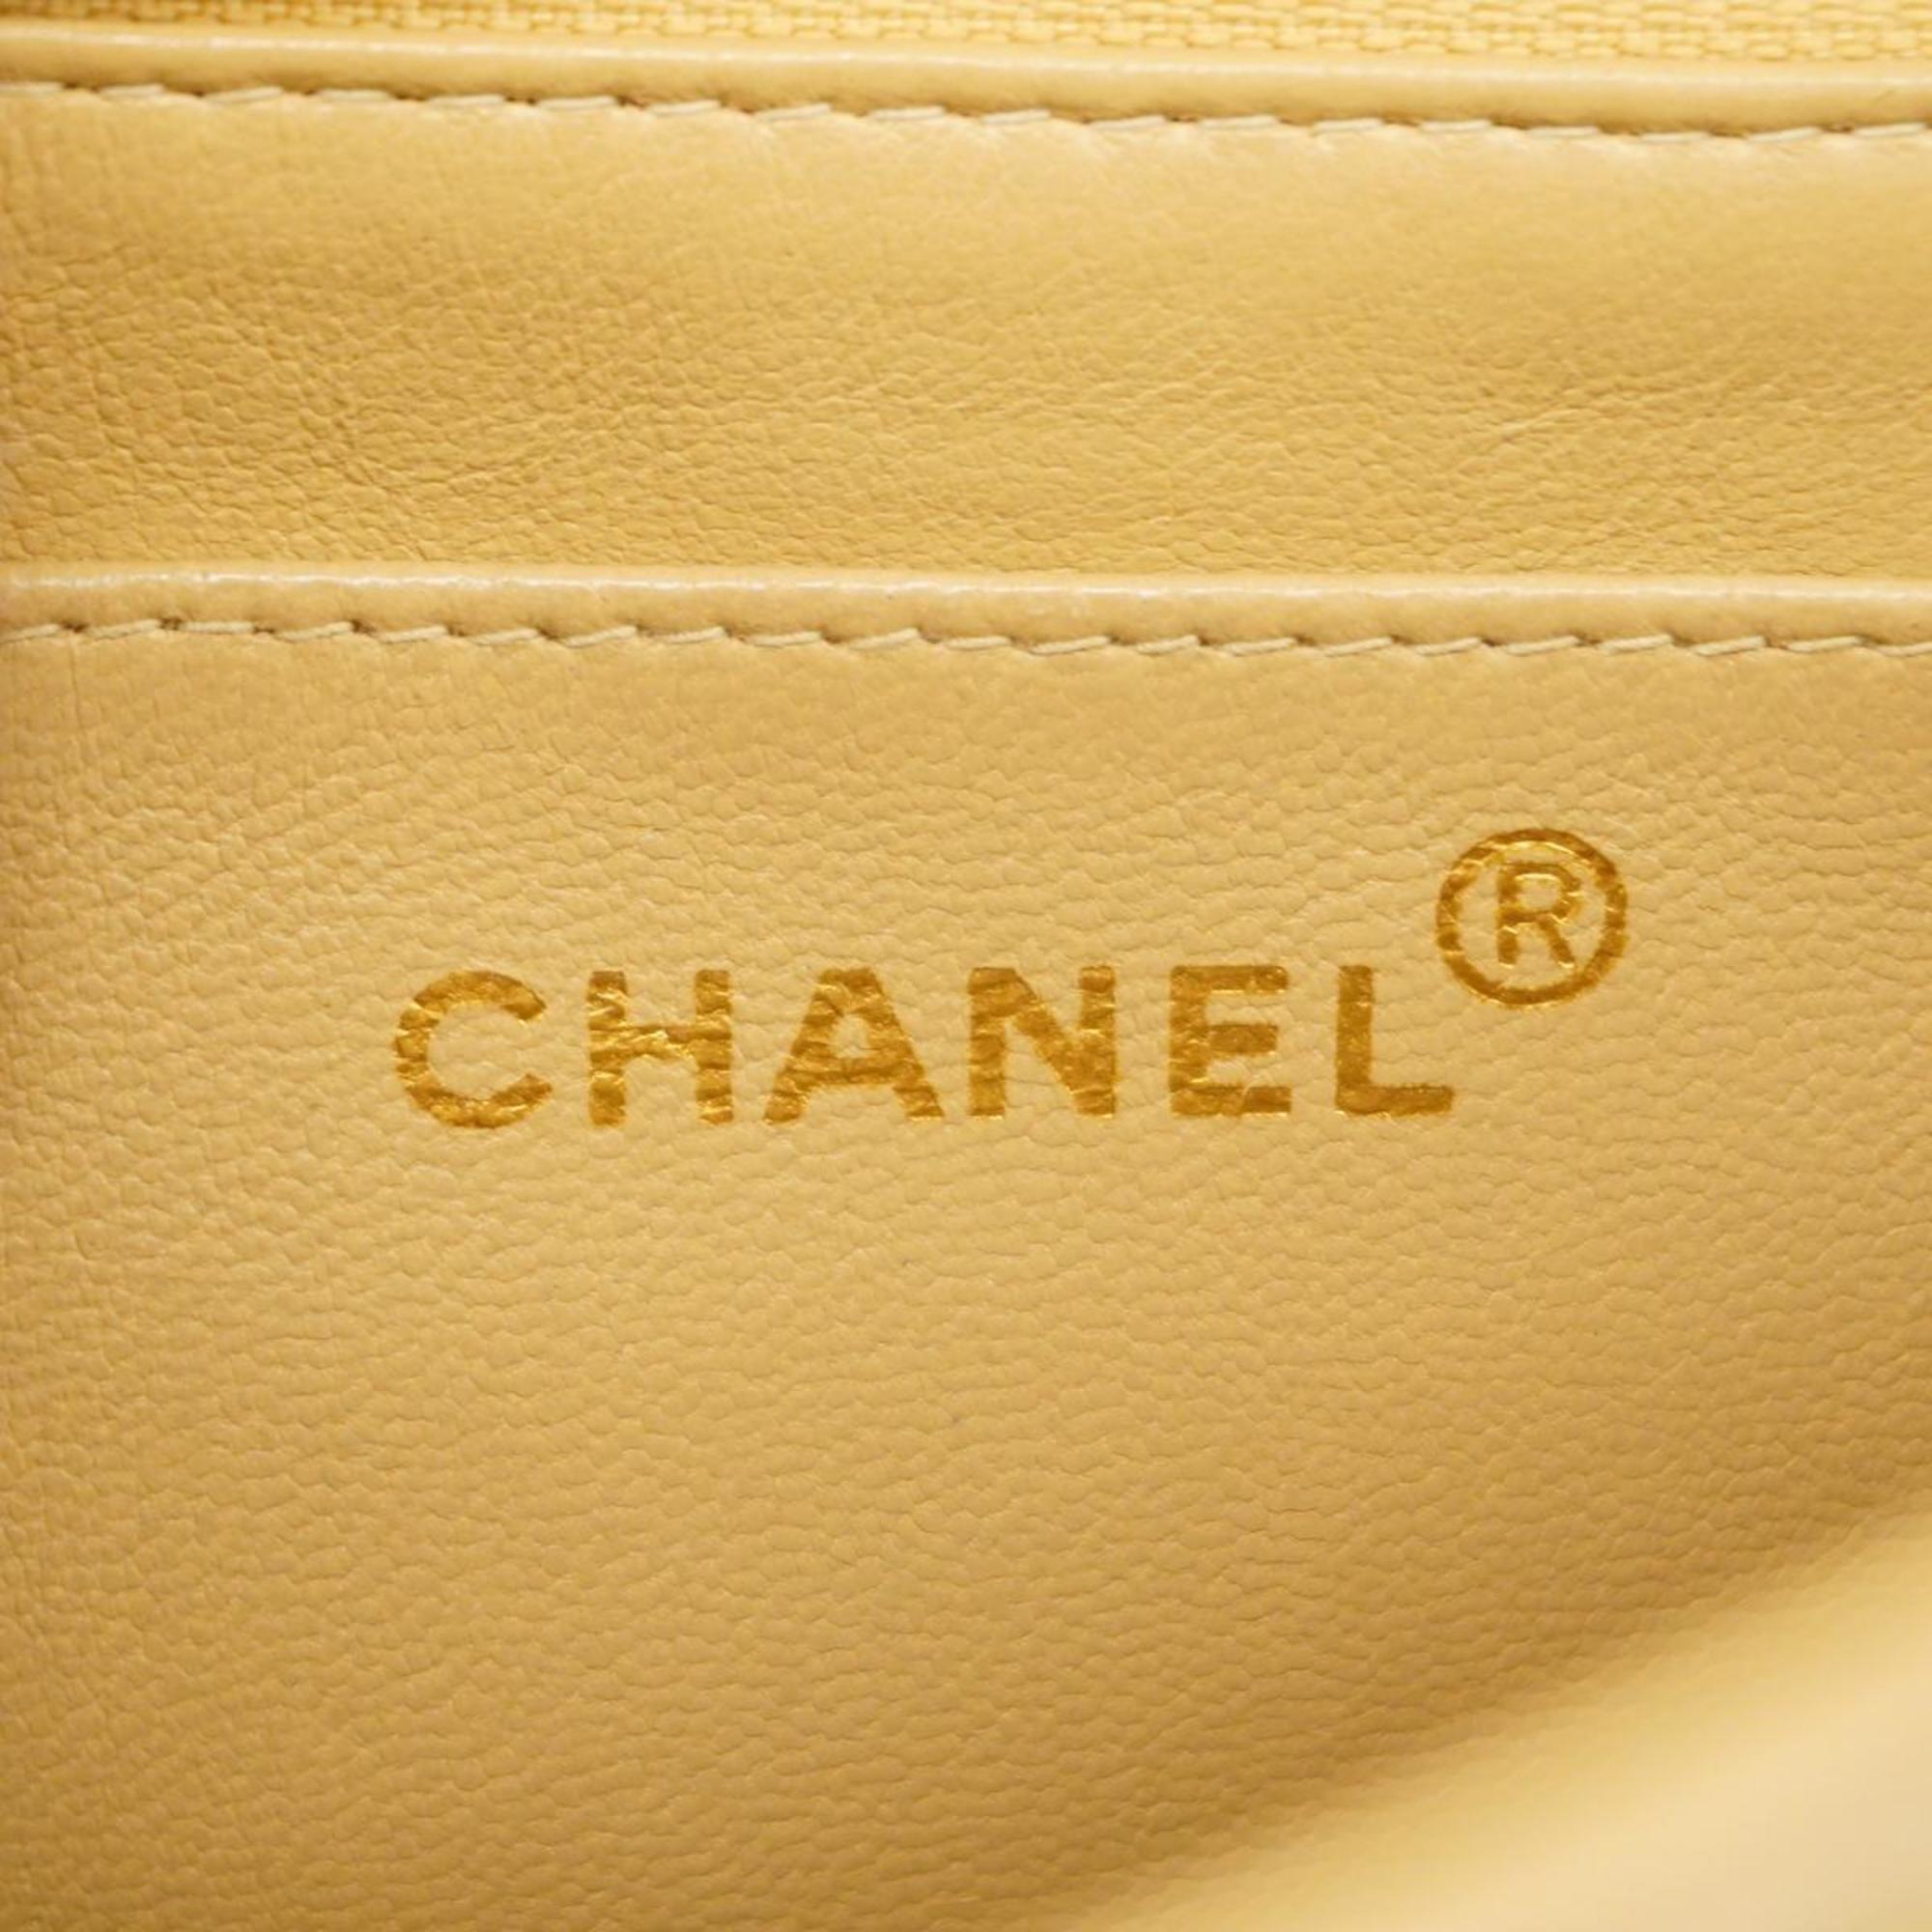 シャネル(Chanel) シャネル ショルダーバッグ マトラッセ ダイアナ チェーンショルダー ラムスキン ベージュ   レディース